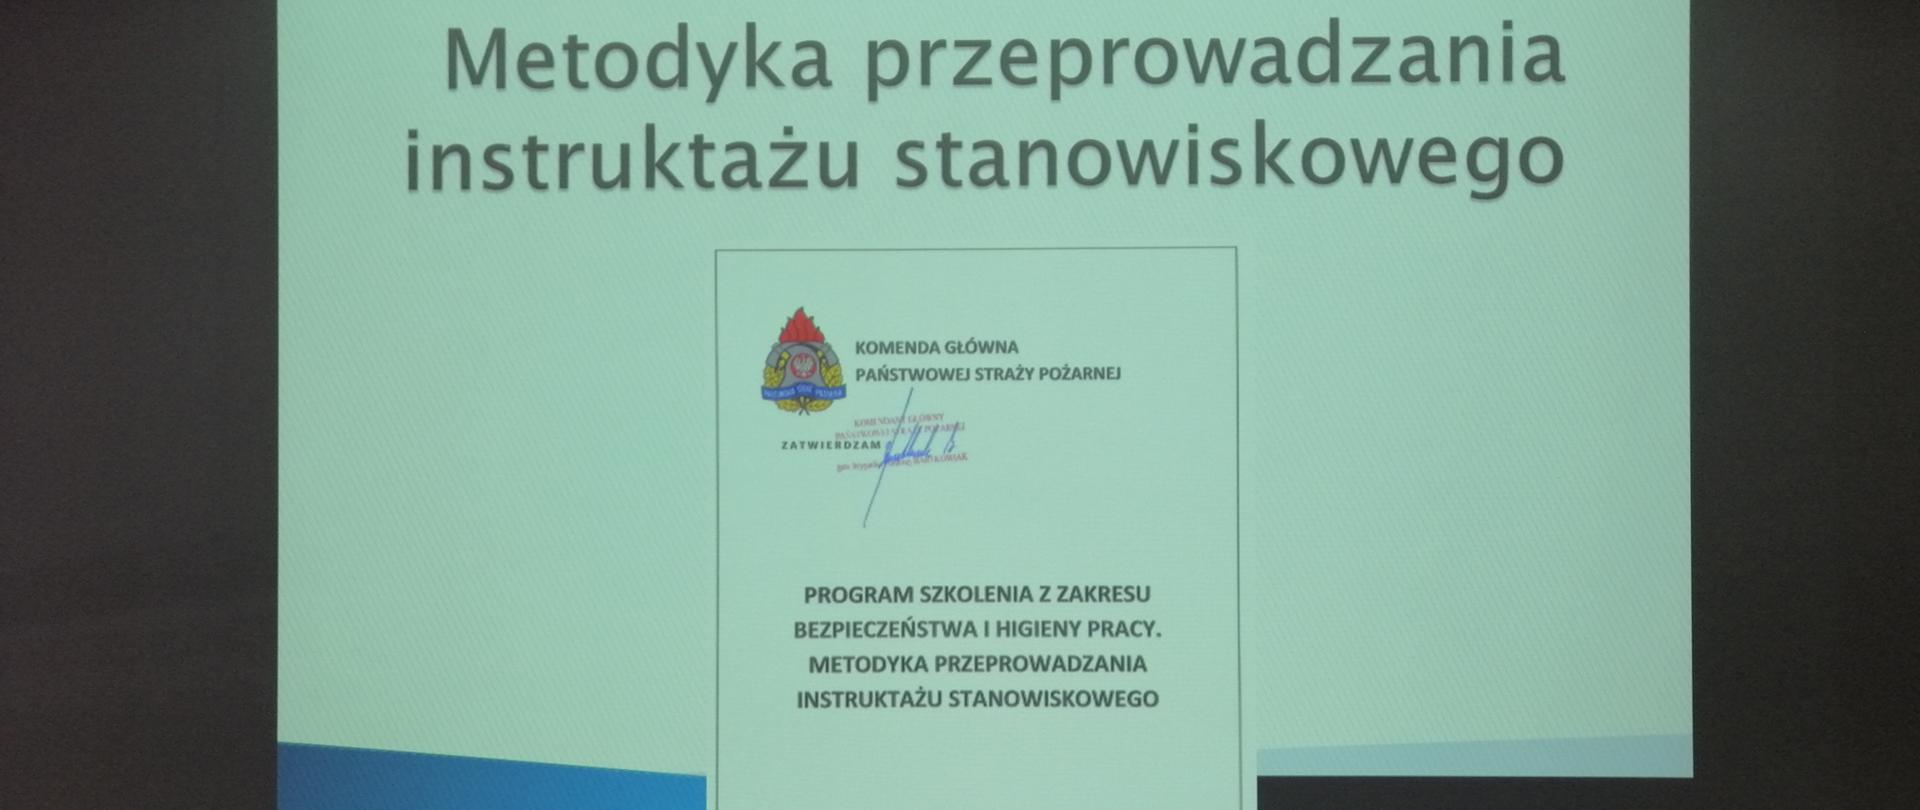 Na zdjęciu widać pierwszy slajd strona tytułowa szkolenia. Slajd wyświetlony jest na ścianie w sali konferencyjnej w budynku KP PSP w Ostrowcu Św.